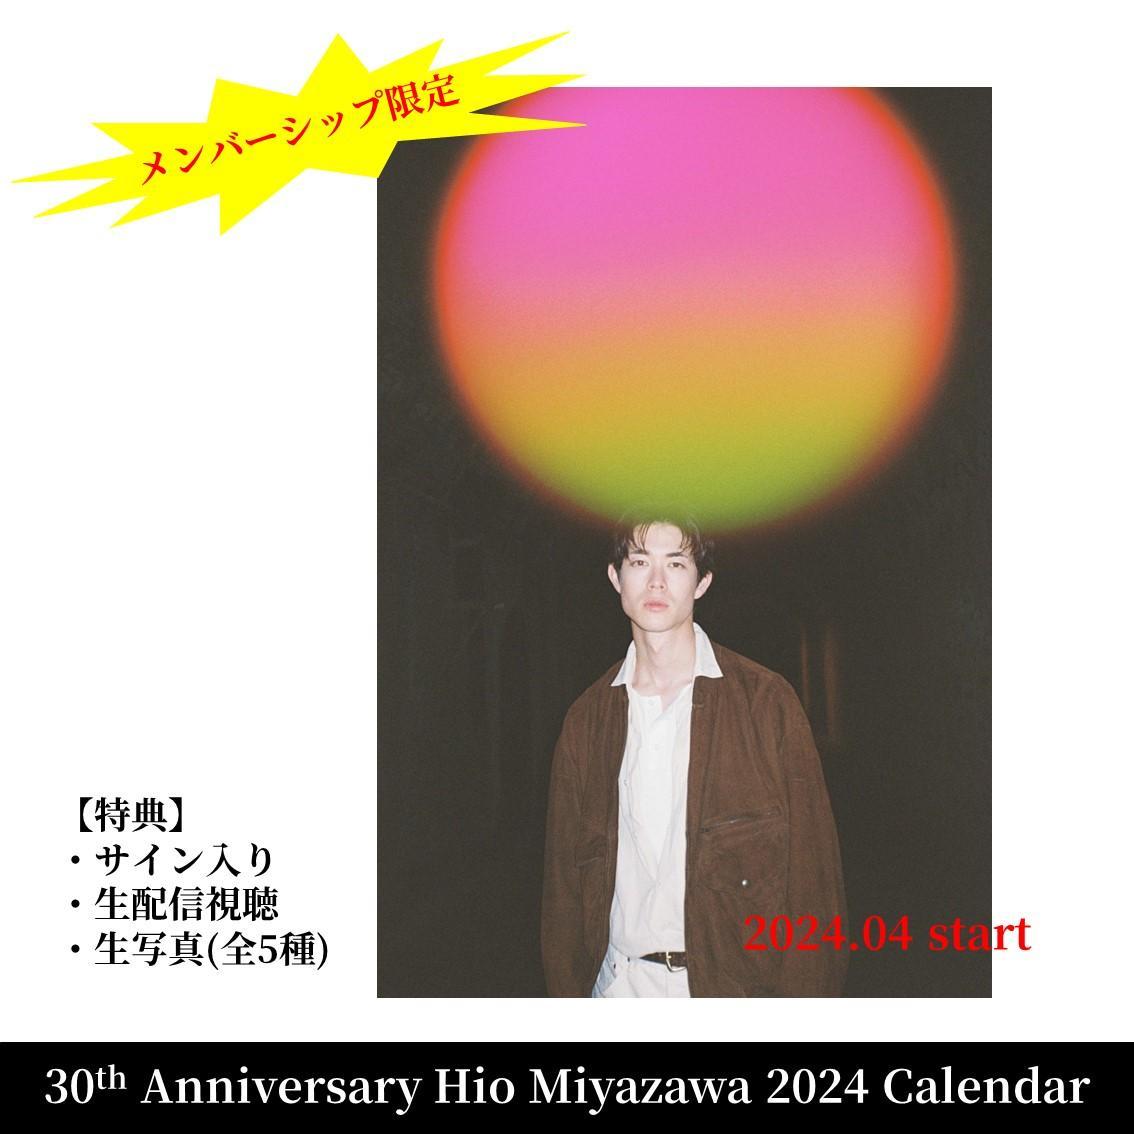 追加販売【メンバーシップ限定】30th Anniversary Hio Miyazawa Calendar 2024 ※特典付き